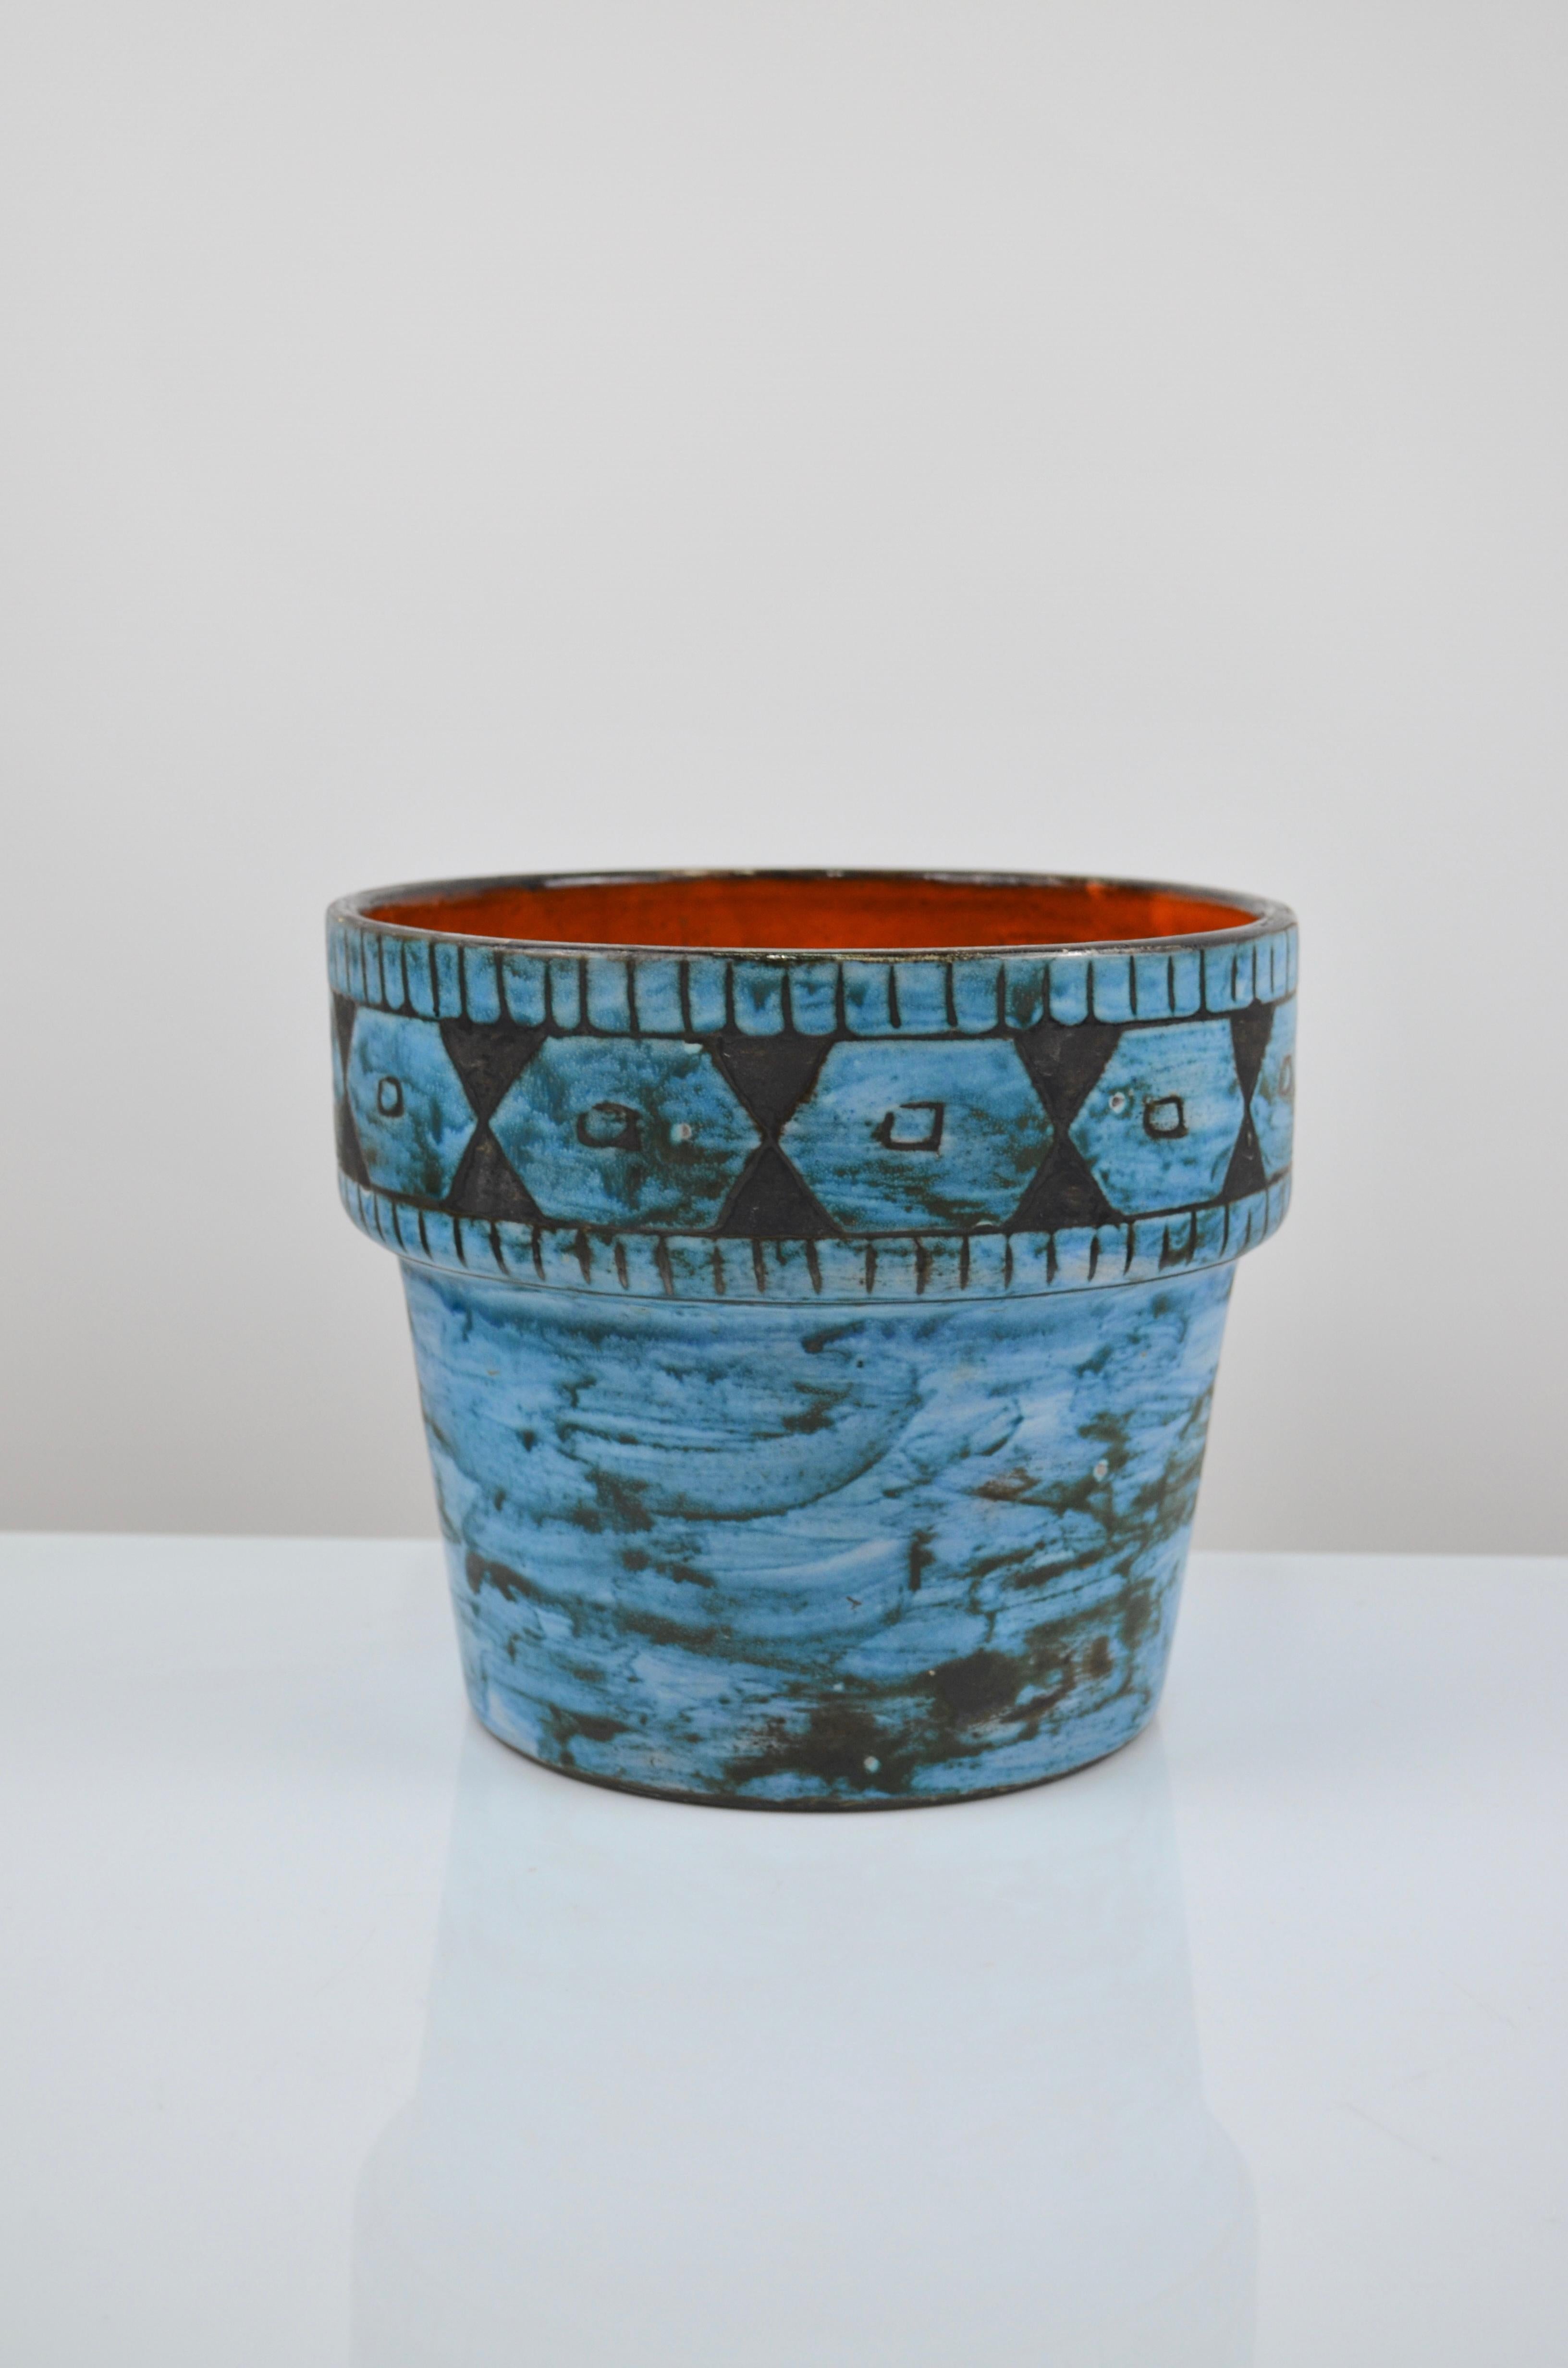 Keramikvase von Alain Maunier, Vallauris, Frankreich, 60er Jahre
Dekor aus geometrischen Friesen, schwarze und blaue Emaille
Unterschrieben unten